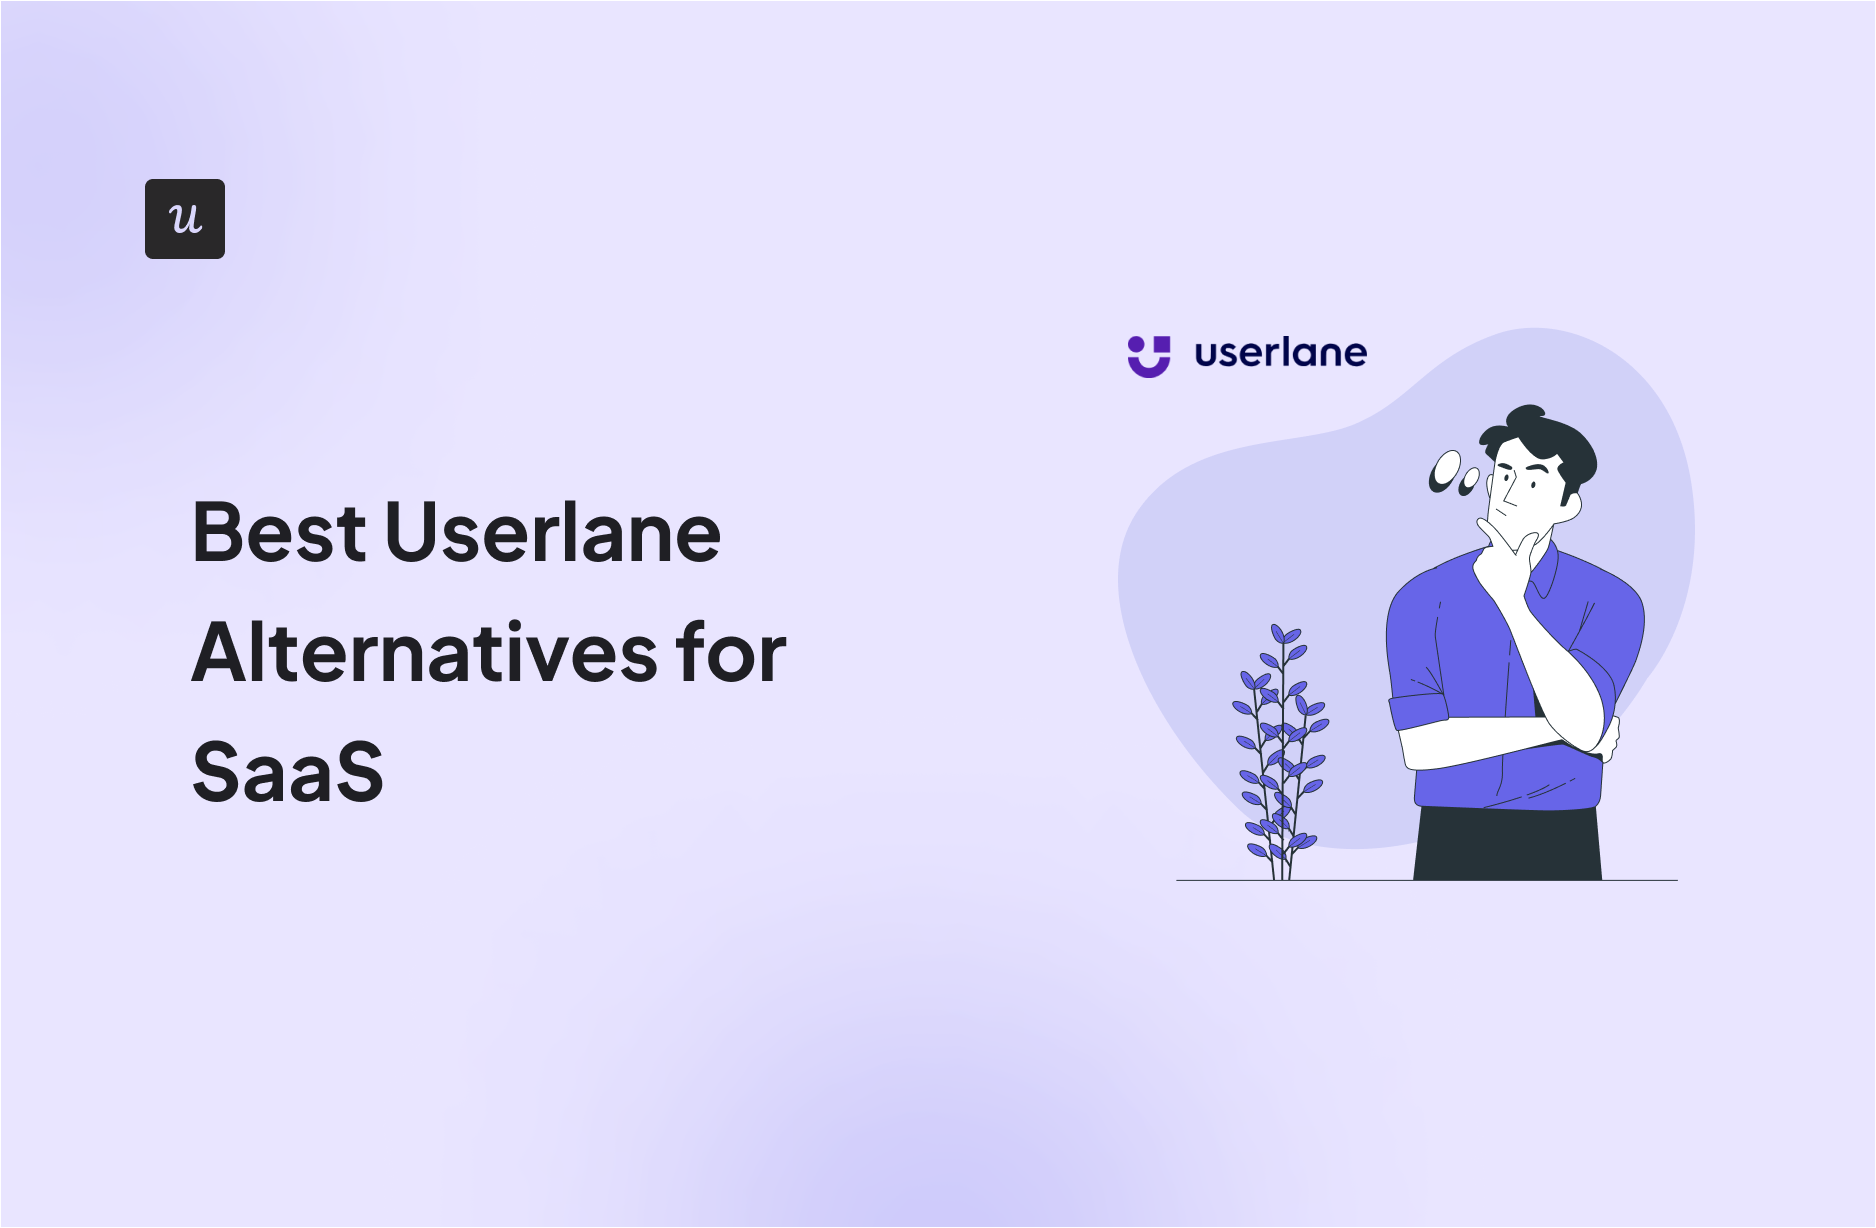 Best Userlane Alternatives for SaaS